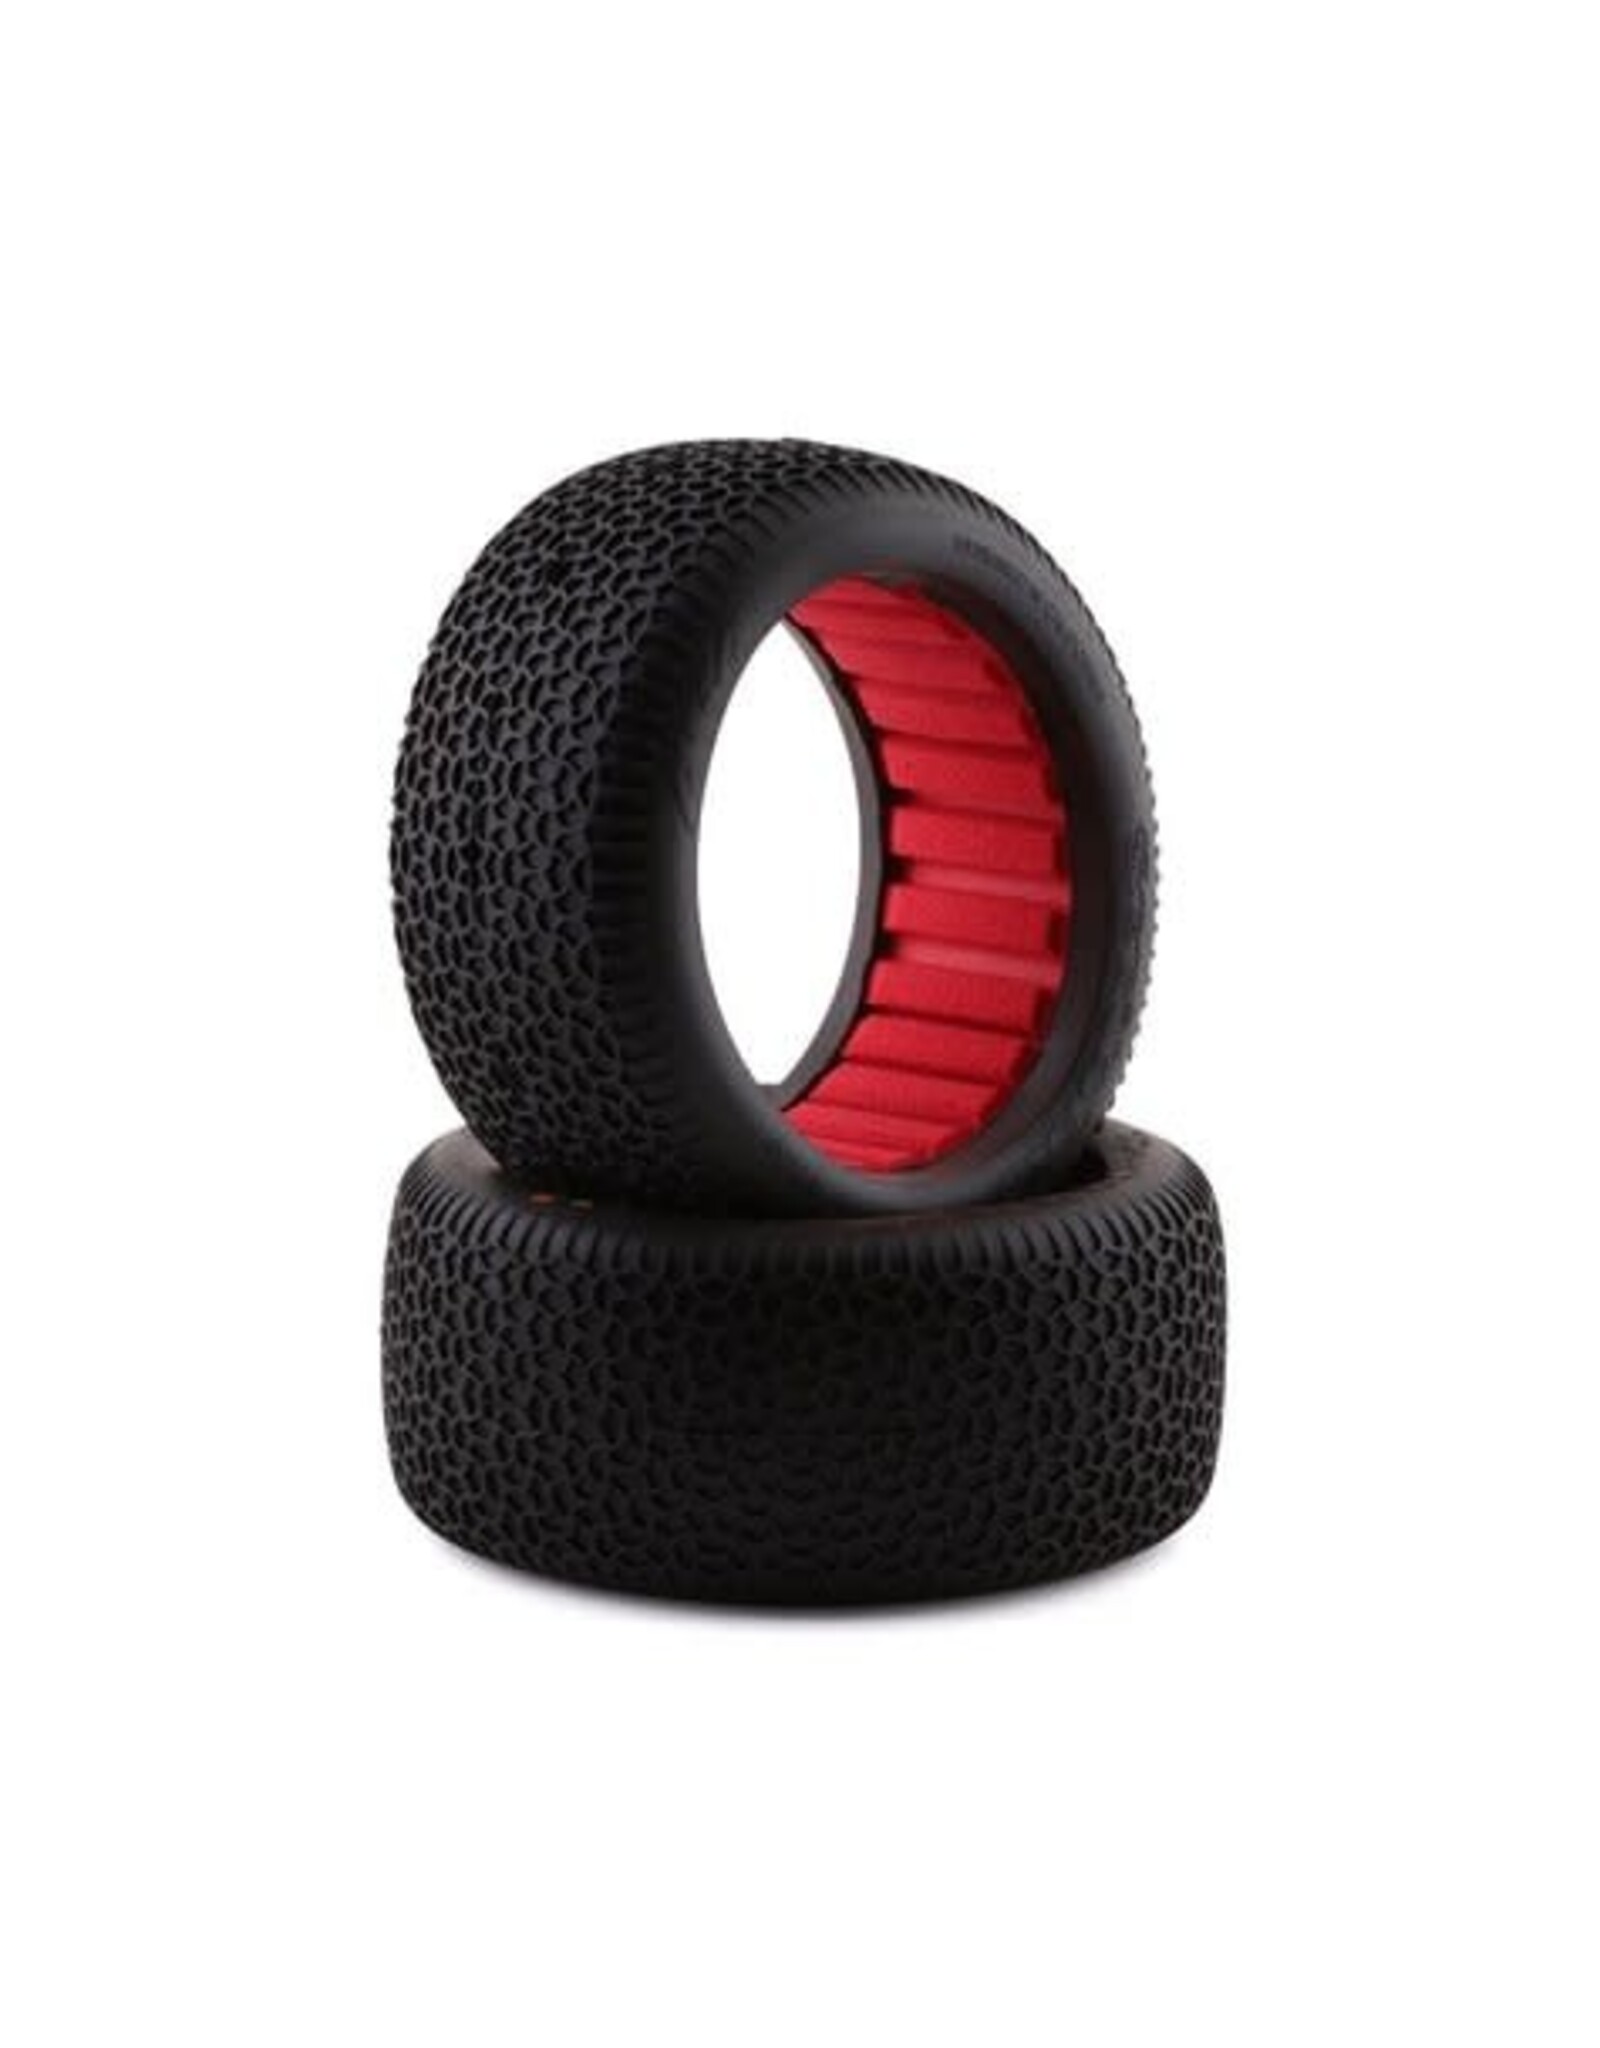 Aka AKA EVO Scribble 1/8 Truggy Tires (2) (Super Soft - Long Wear)